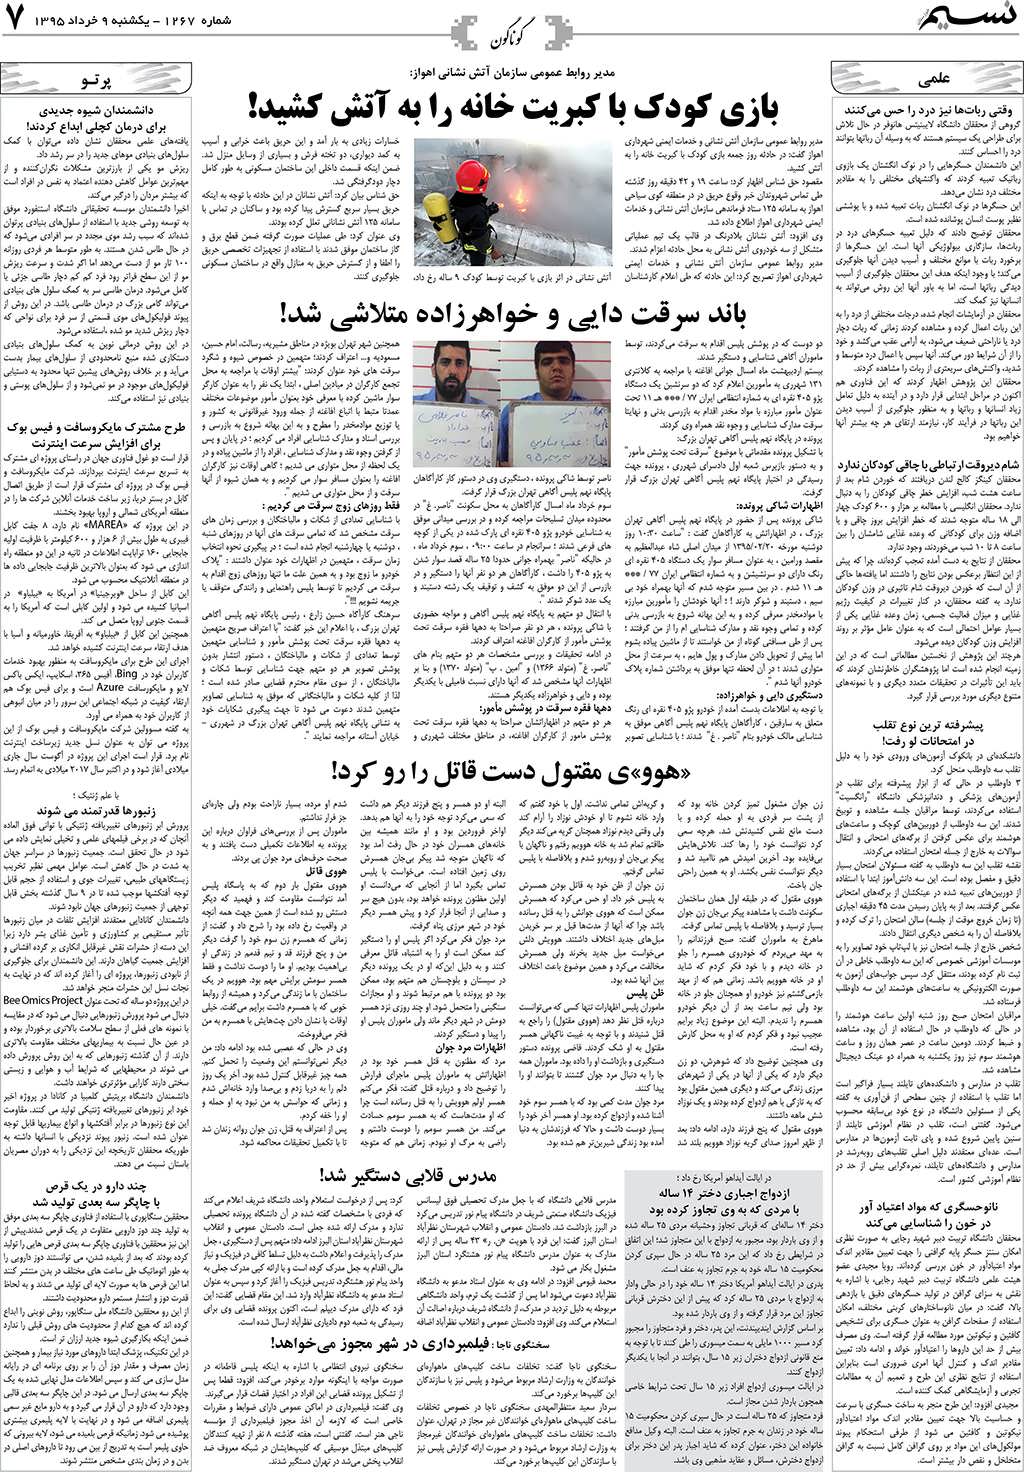 صفحه گوناگون روزنامه نسیم شماره 1267